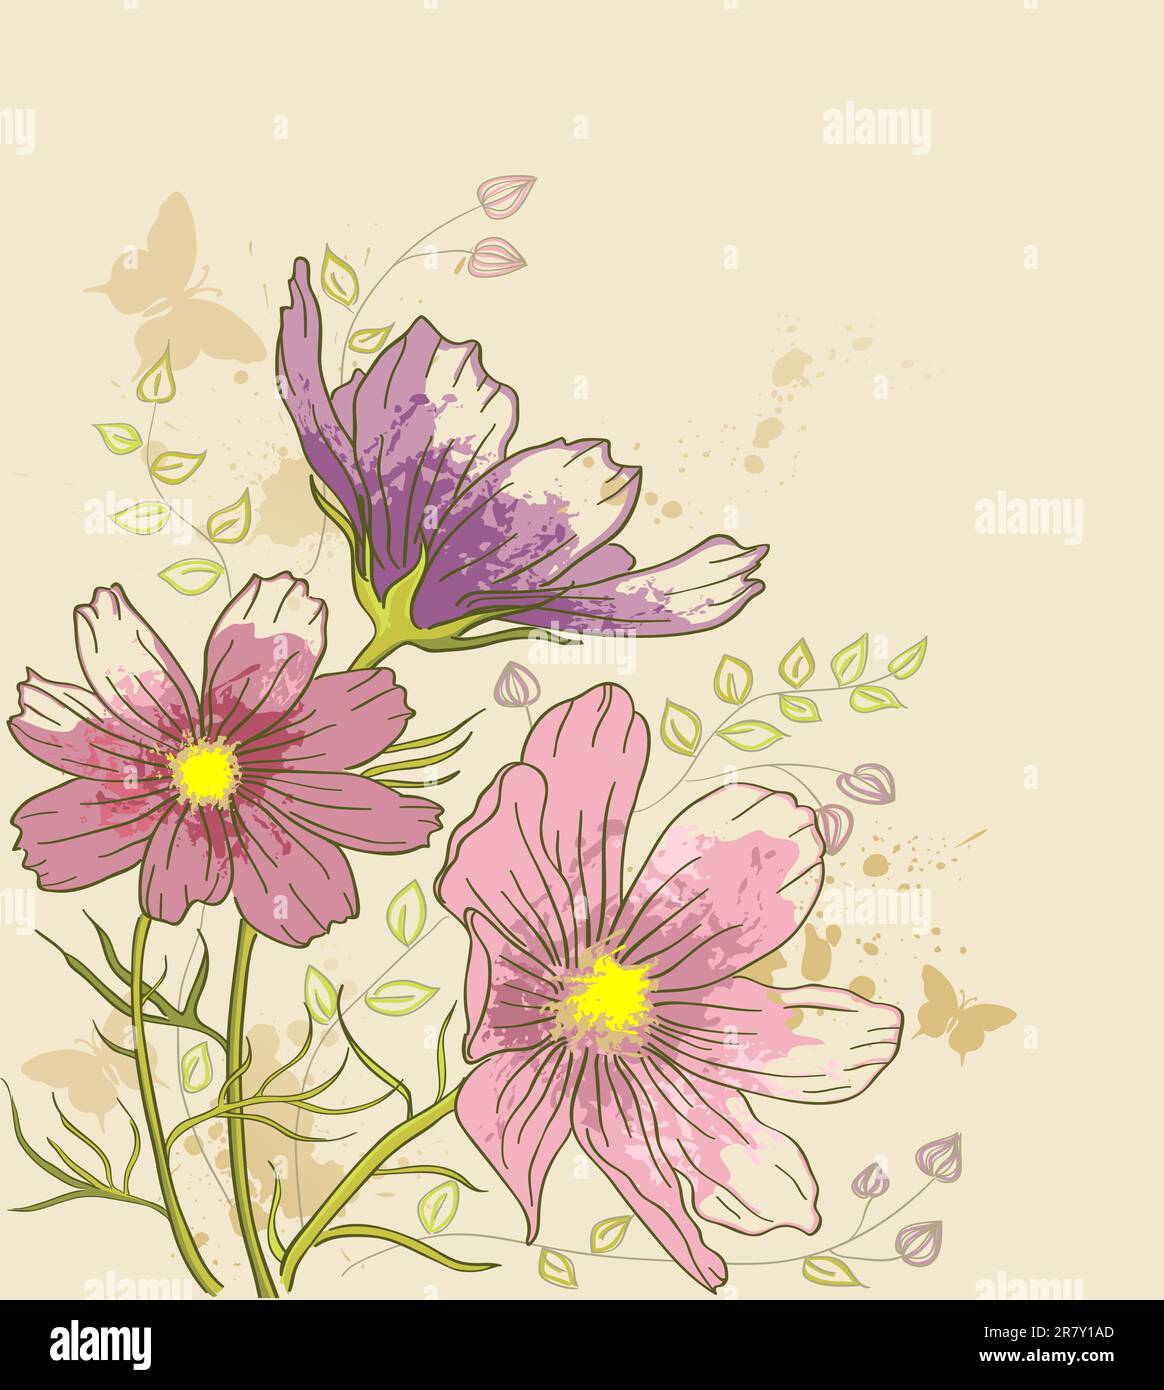 Vecteur de fond floral vintage avec fleurs cosmos Illustration de Vecteur